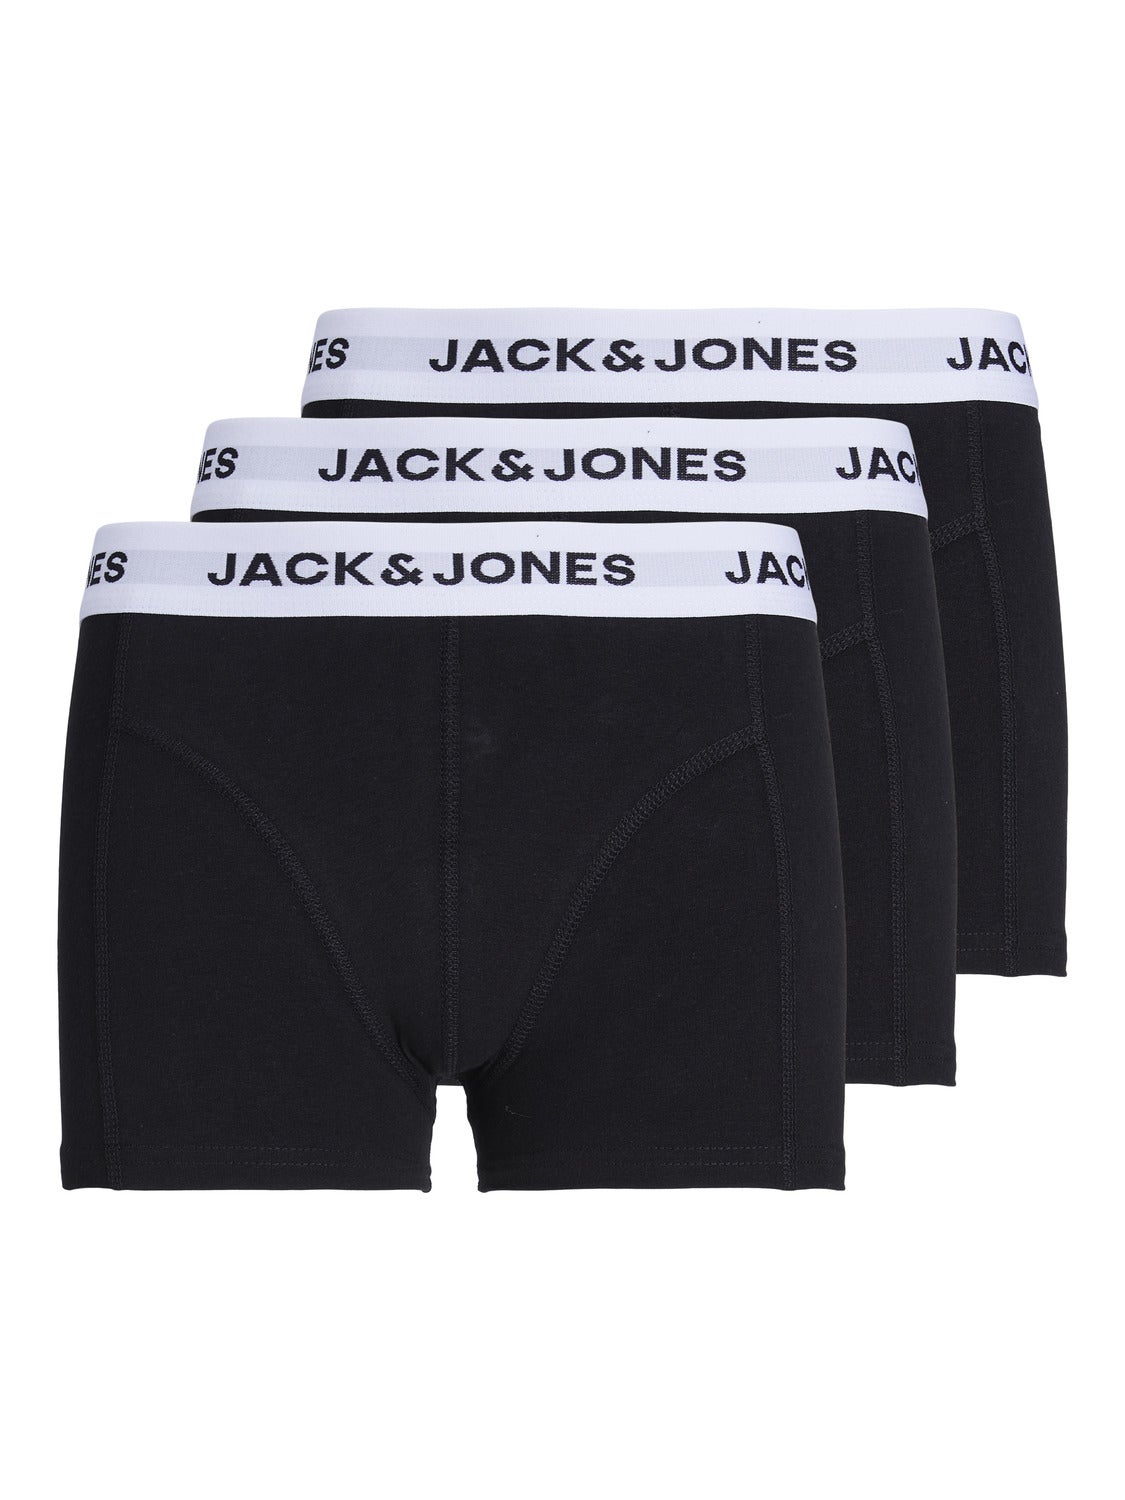 Garçons Lot De 3 Boxers Men black Jack & Jones Garçon Vêtements Sous-vêtements Culottes & Bas Shortys 